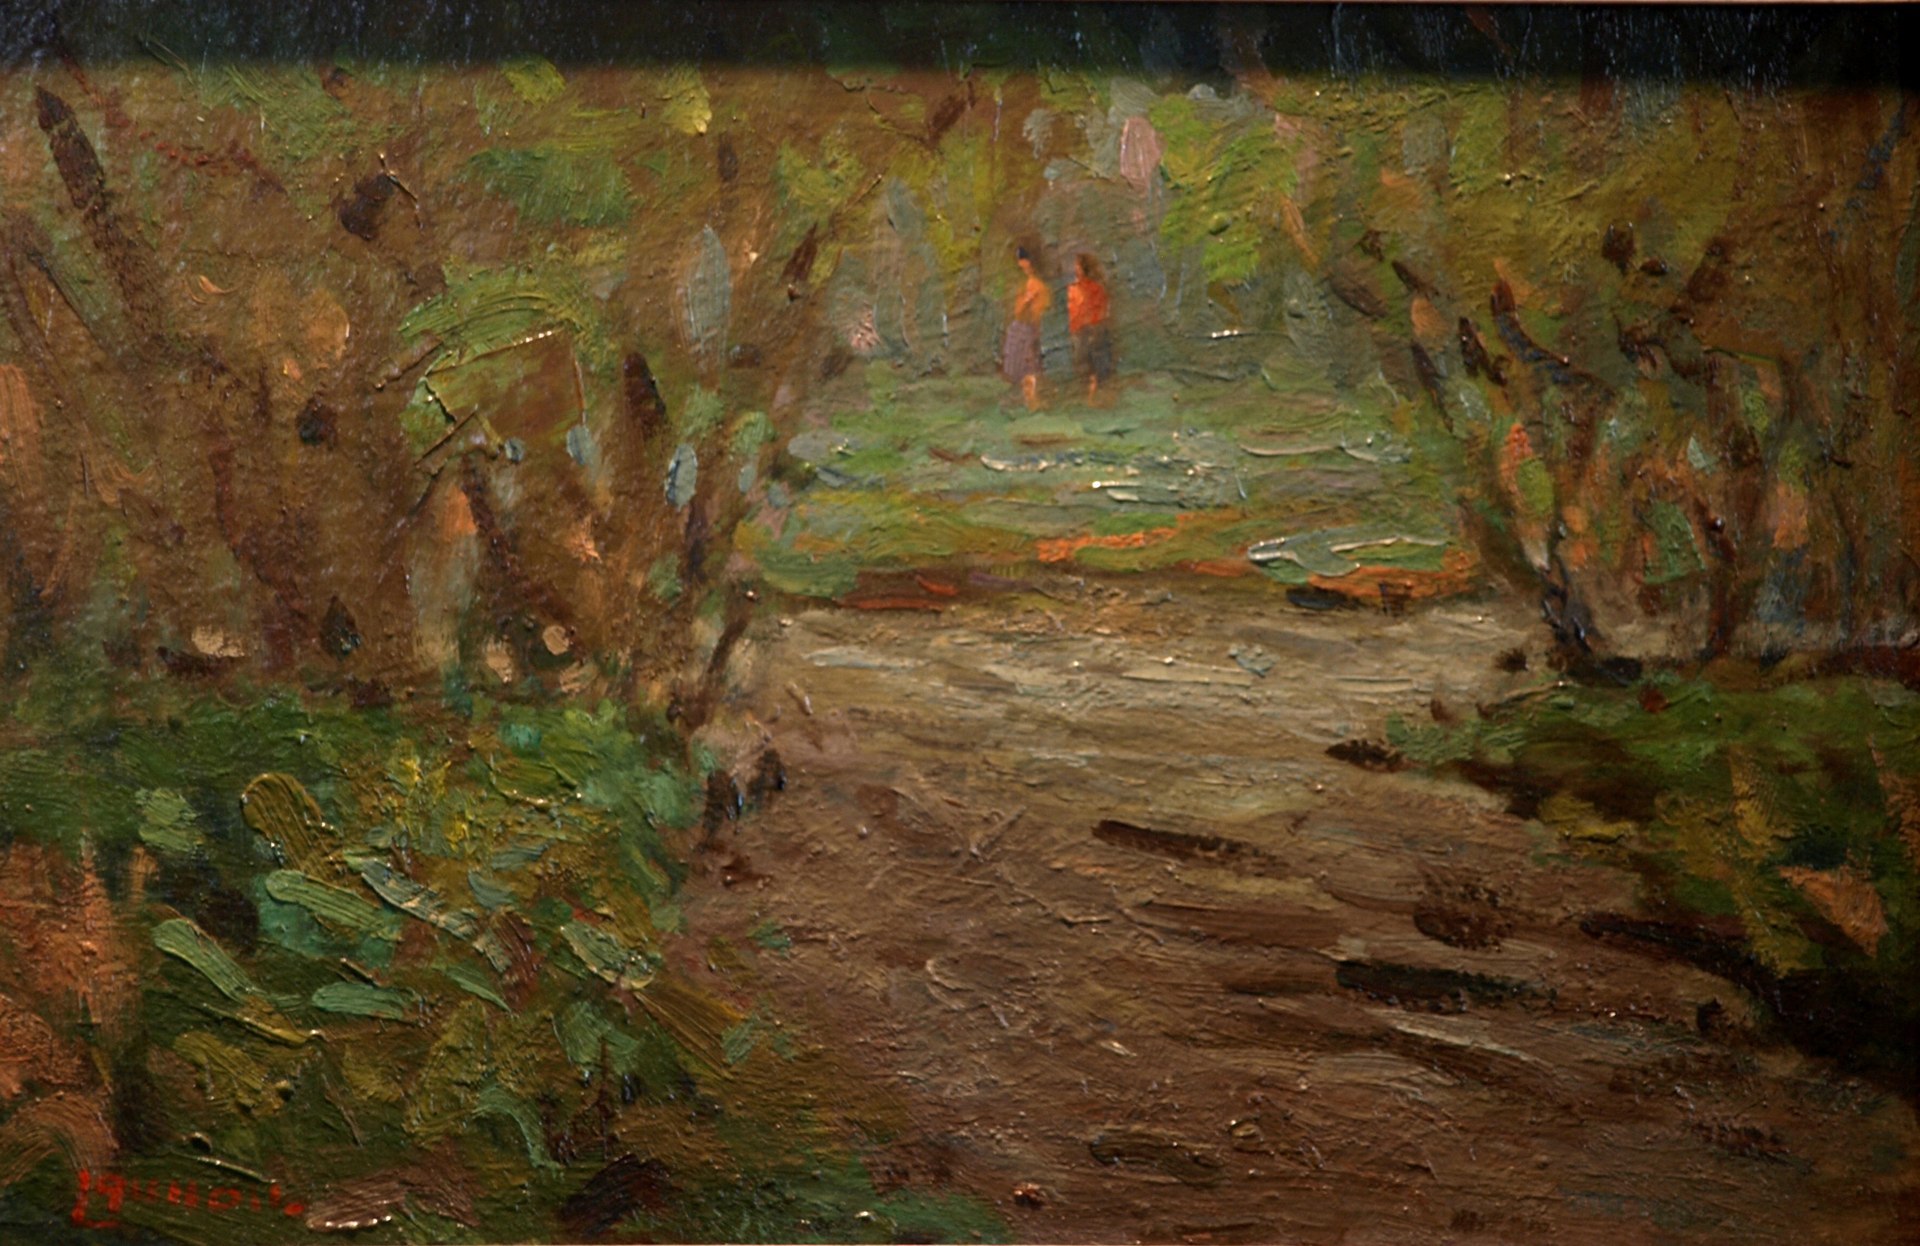 Summertime Sojourn, Oil on Panel, 9 x 14 Inches, by Bernard Lennon, $225